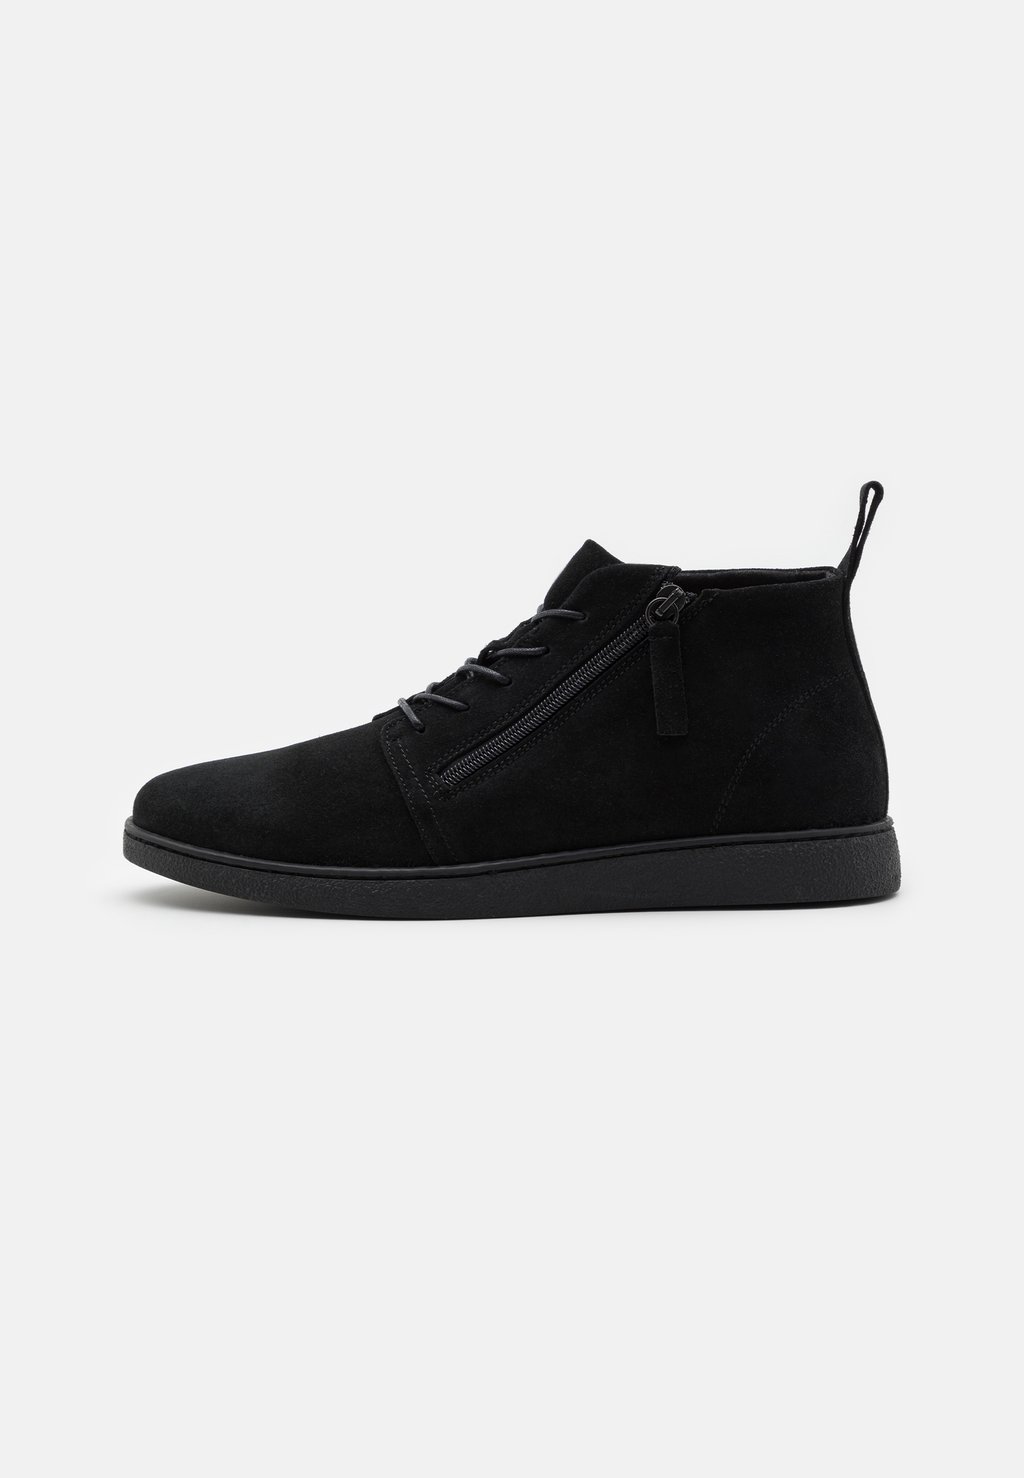 Спортивные туфли на шнуровке Leather Zign, черный